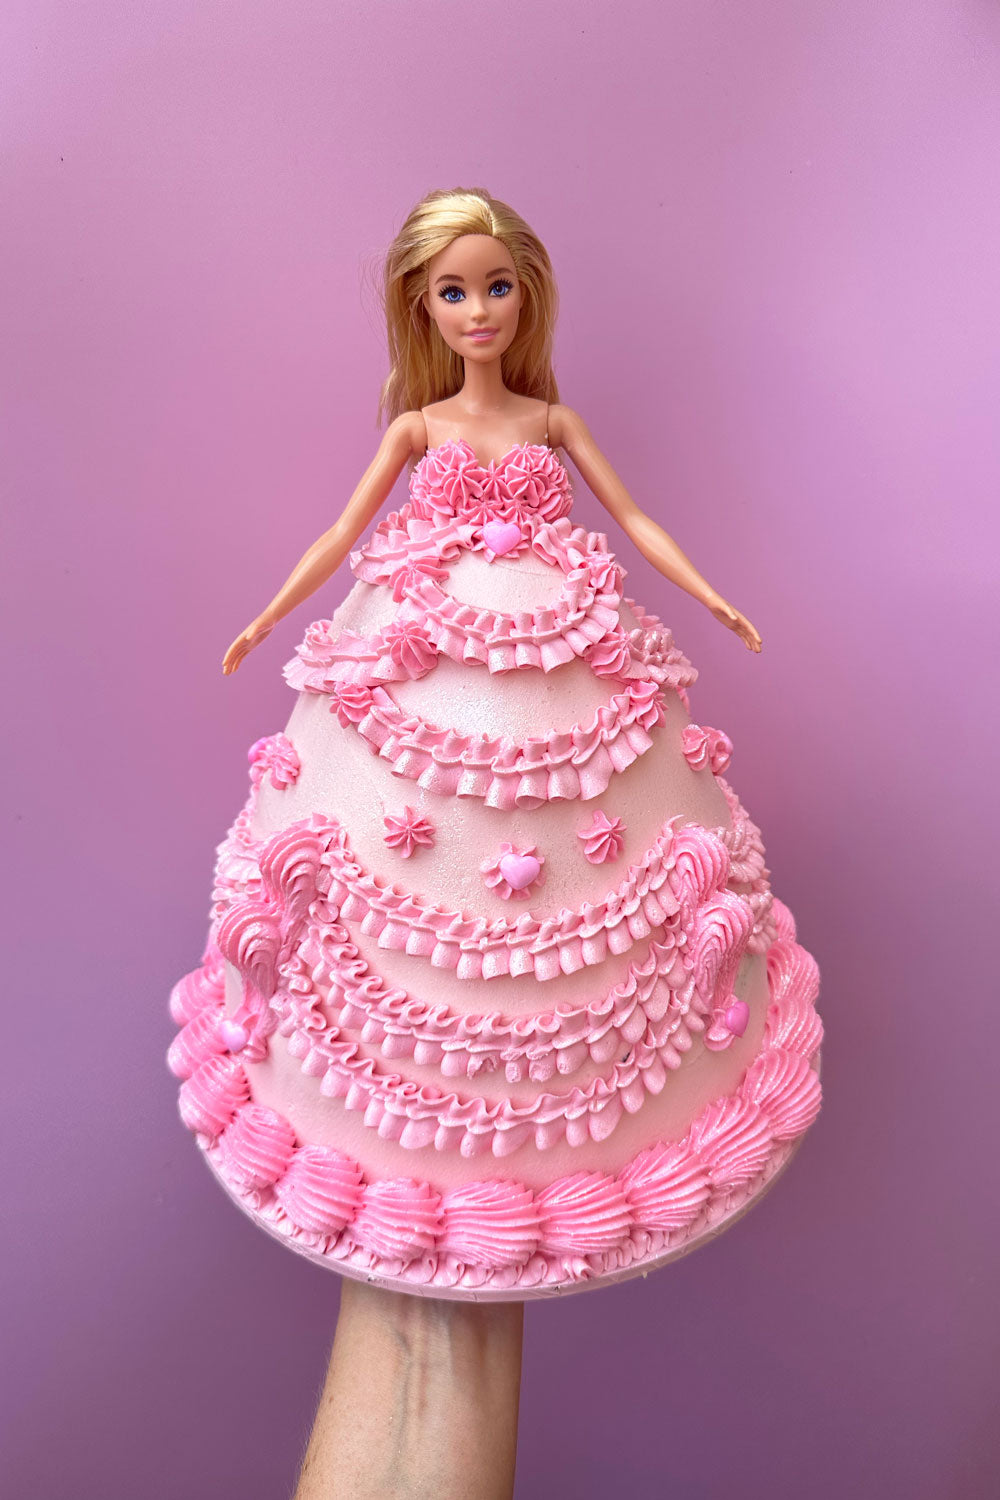 Barbie Doll cake - Cakebuzz